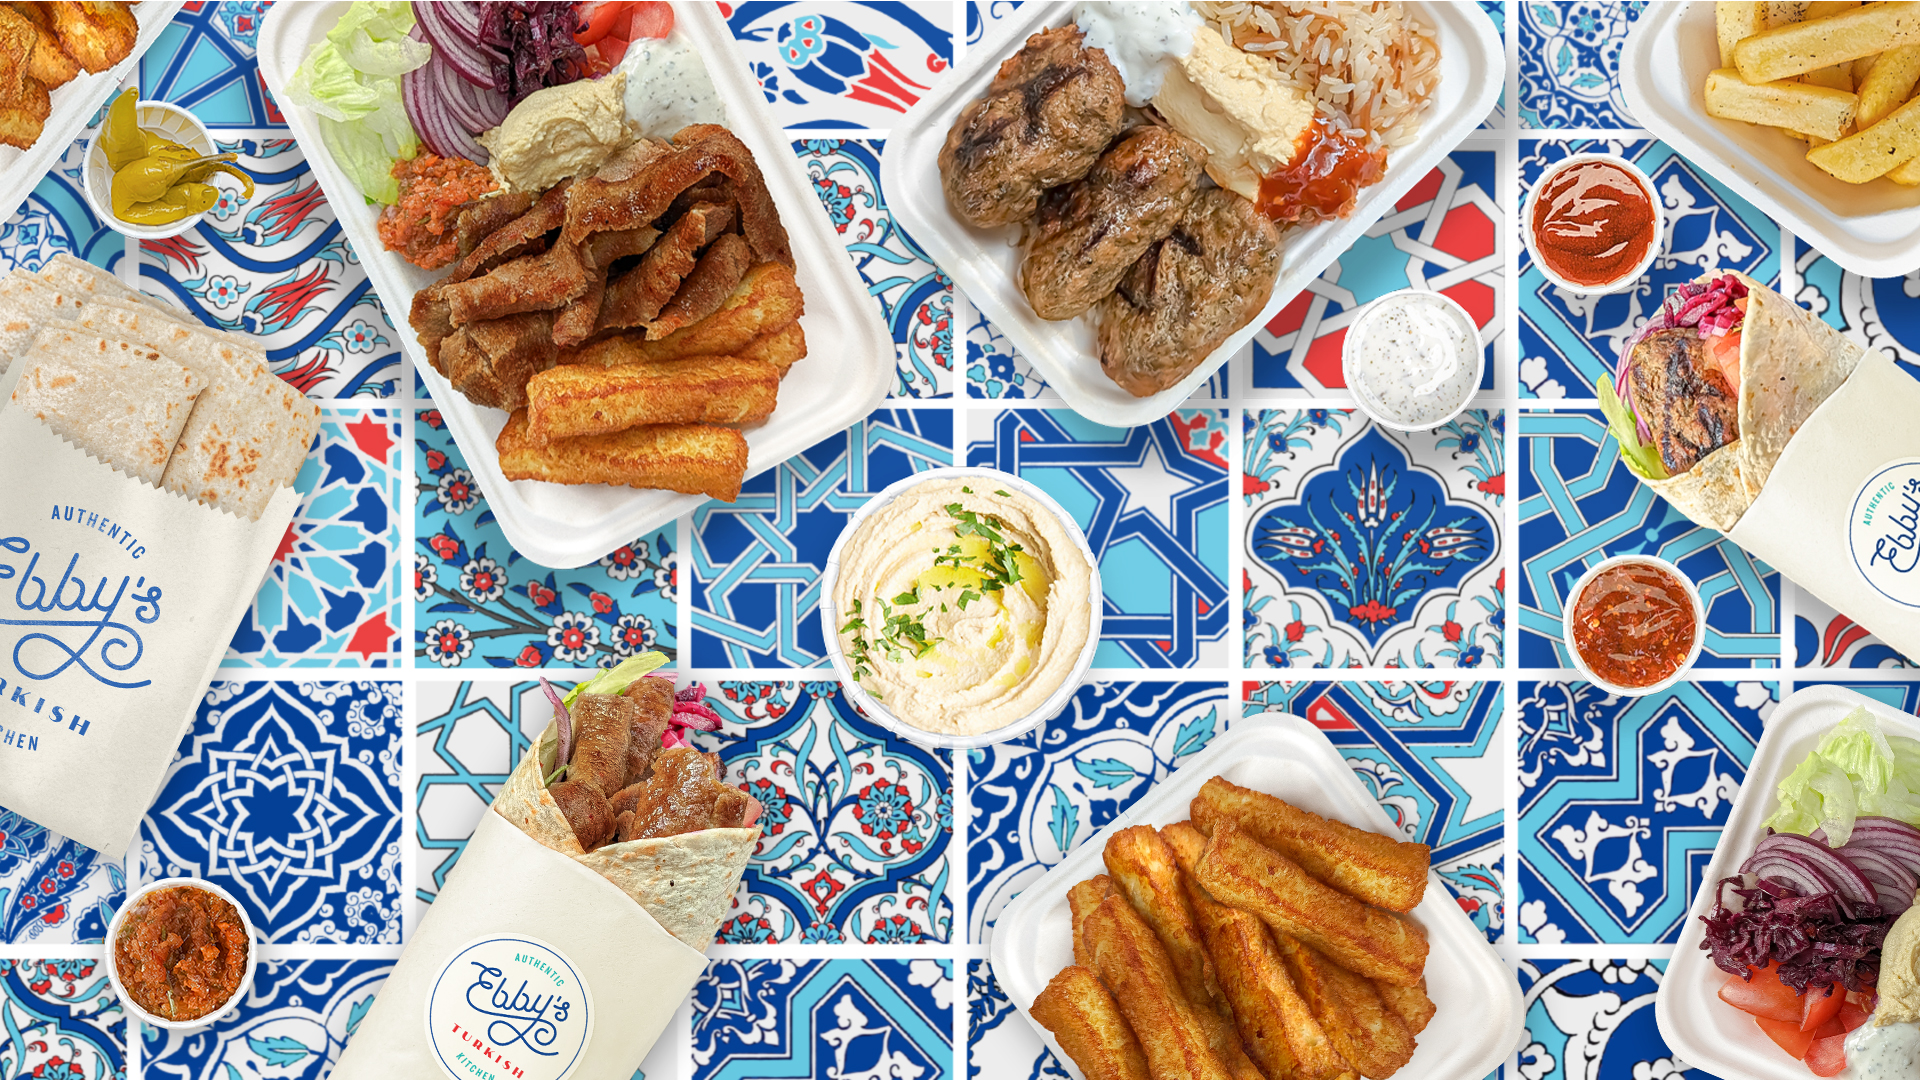 Authentic Turkish street food, köfte(meatball), halloumi, döner kebab, falafel, rice(pilav) box, wraps, salad, hummus, chips.